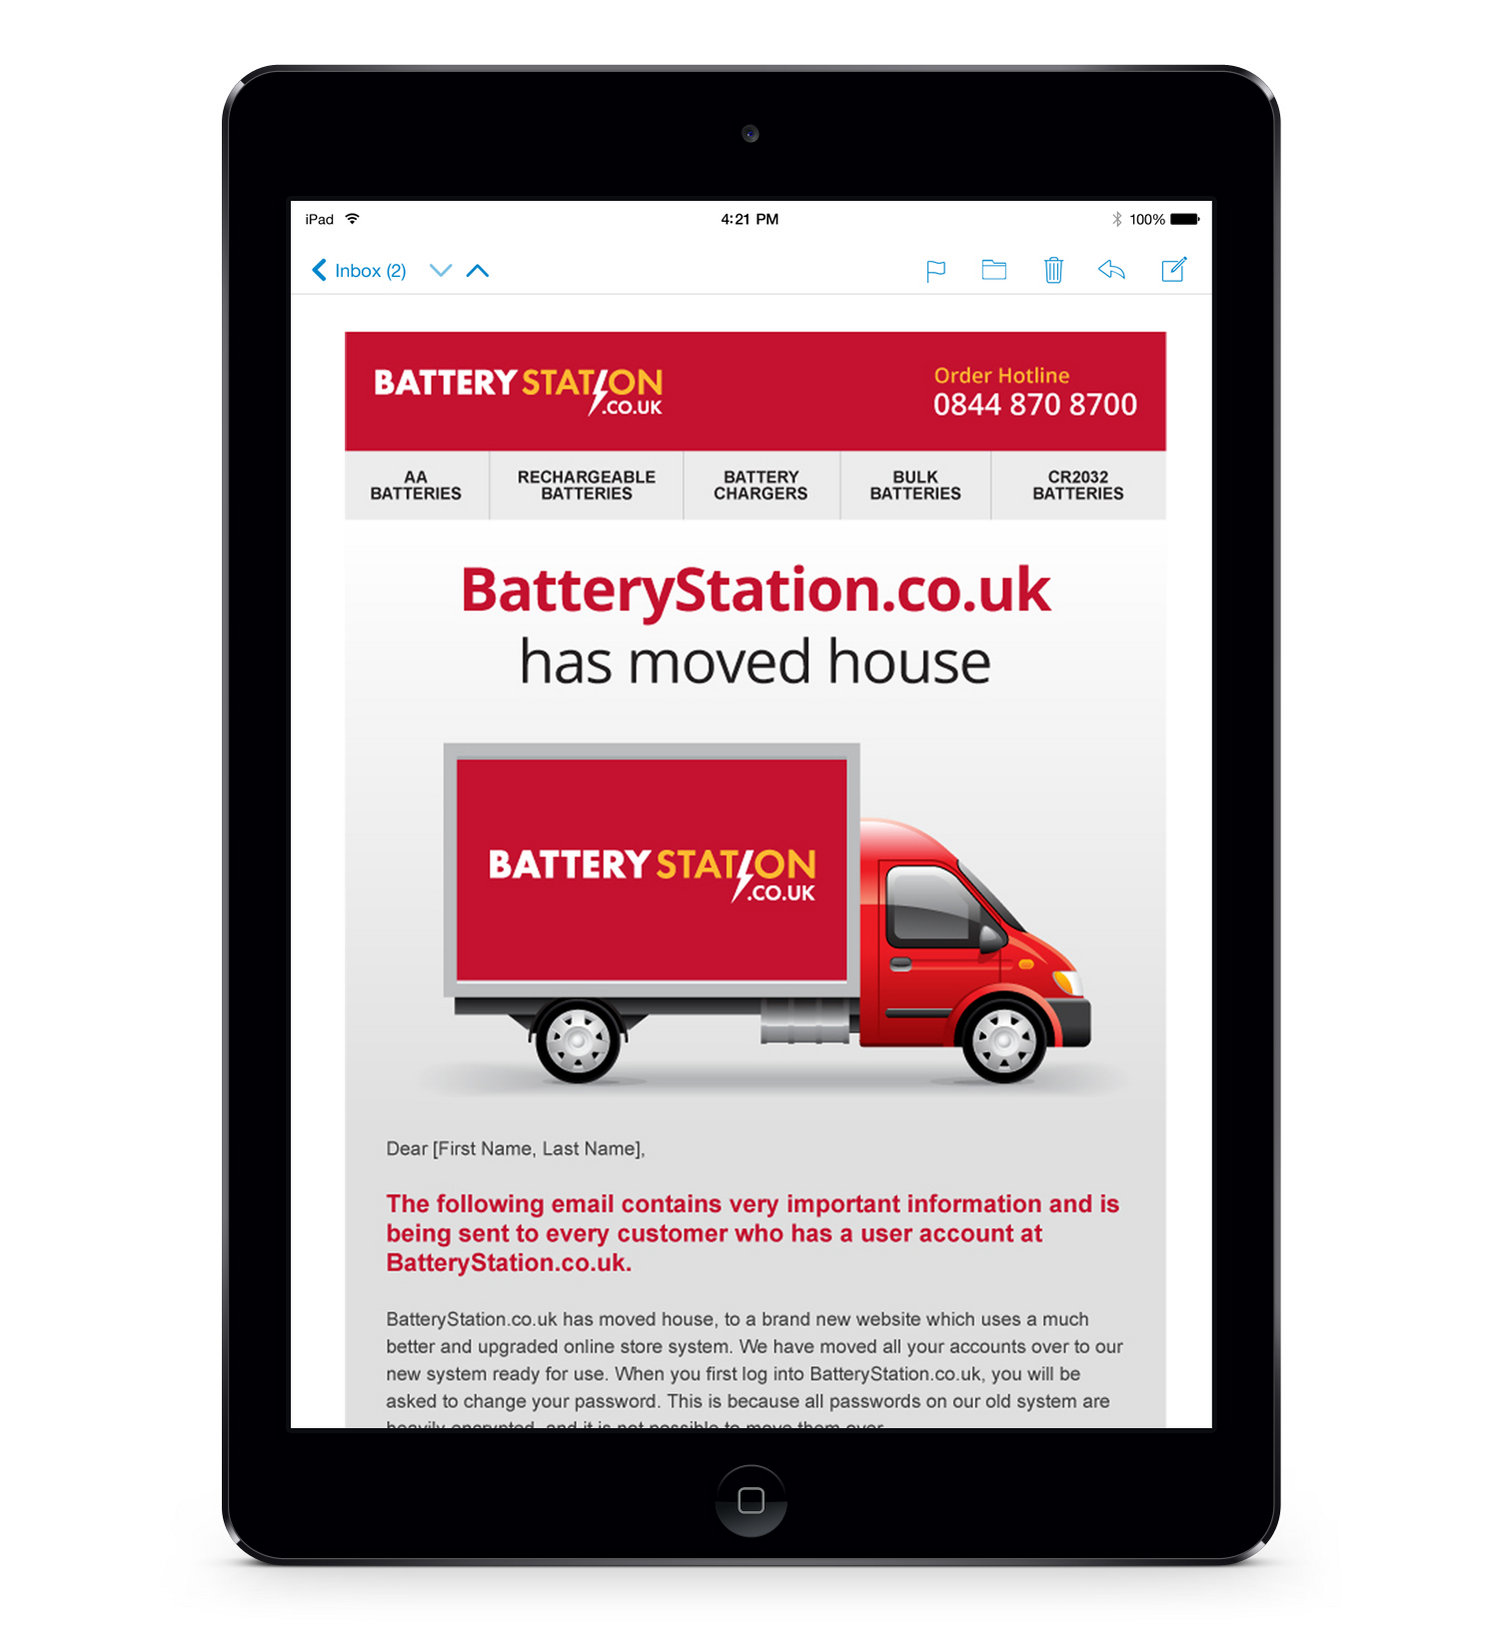 BatteryStation email design shown on tablet